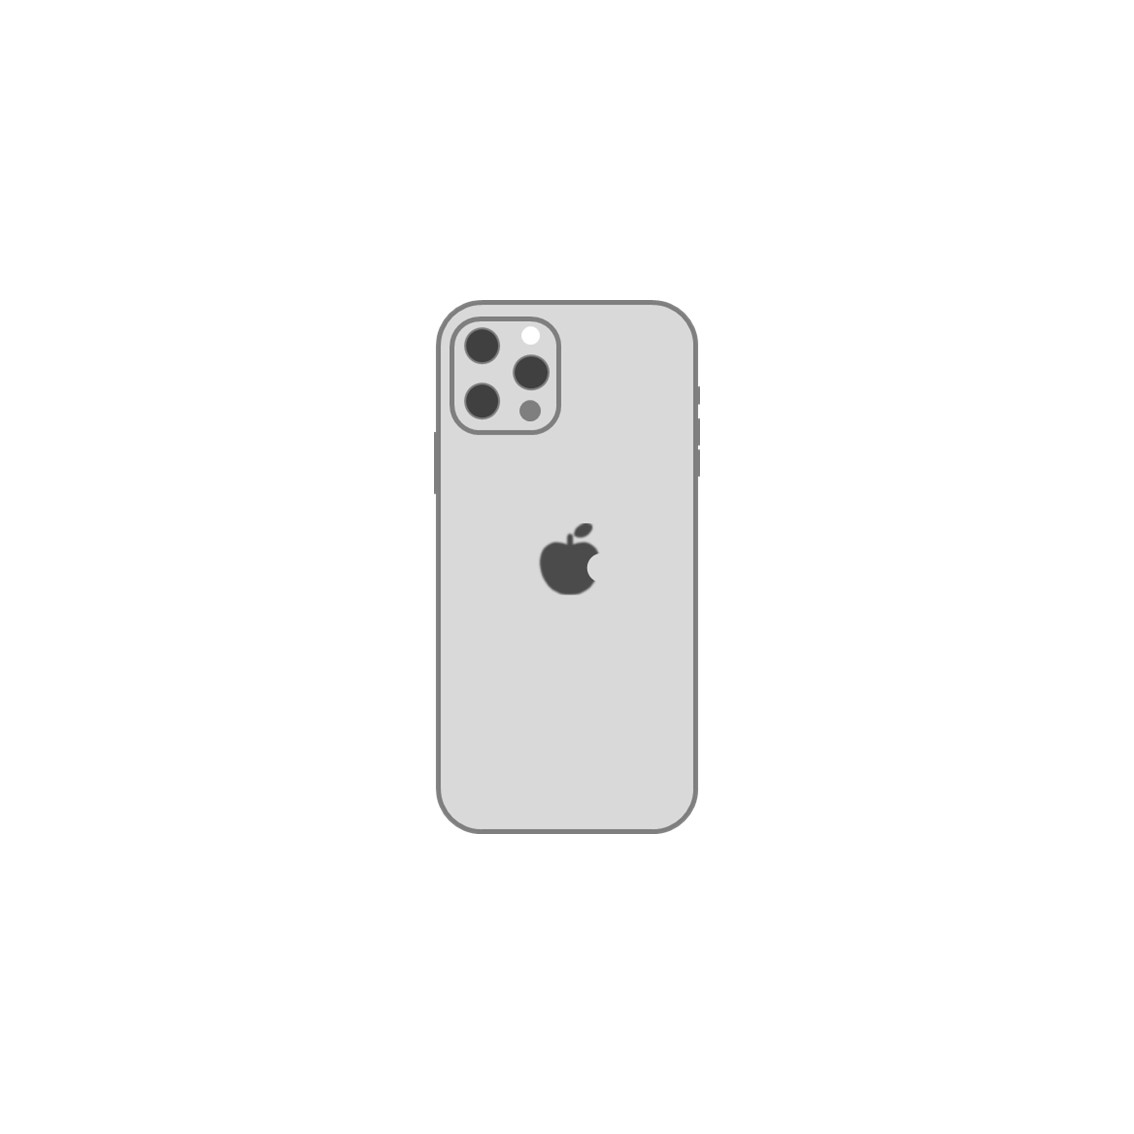 「【png・jpg形式】iPhoneのアイコンイラスト作ってみた。」のアイキャッチ画像